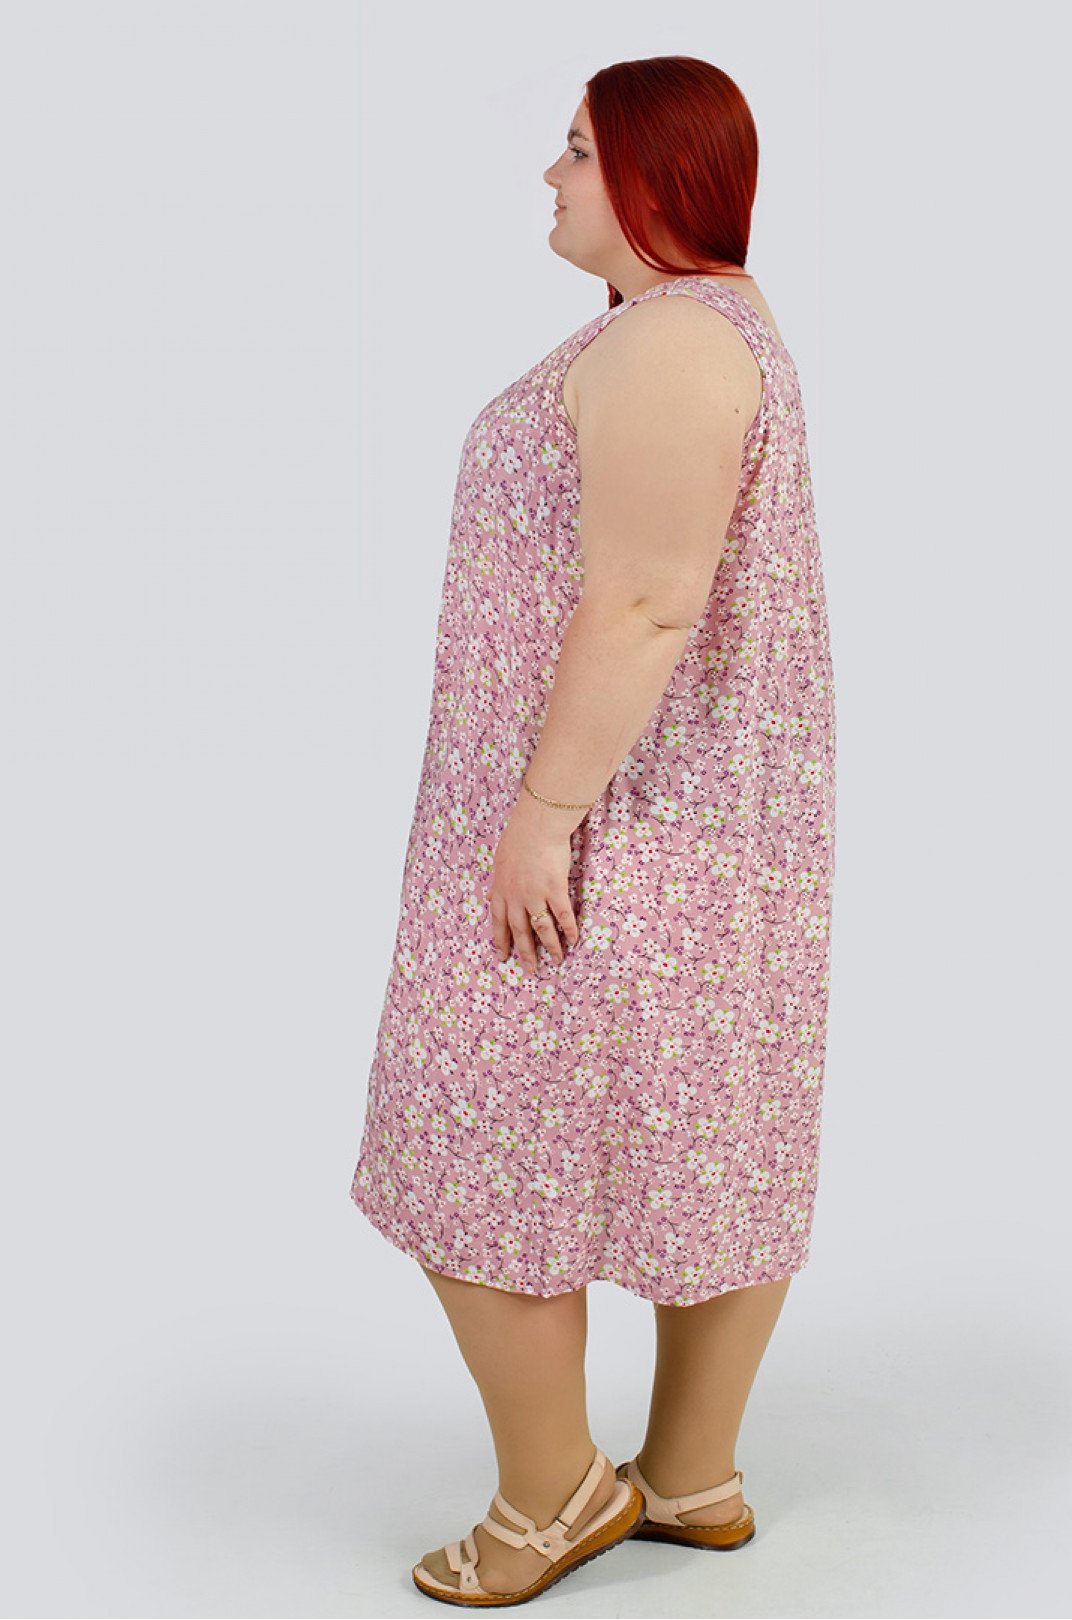 Сарафан-сукня в принт мільфльор великих розмірів